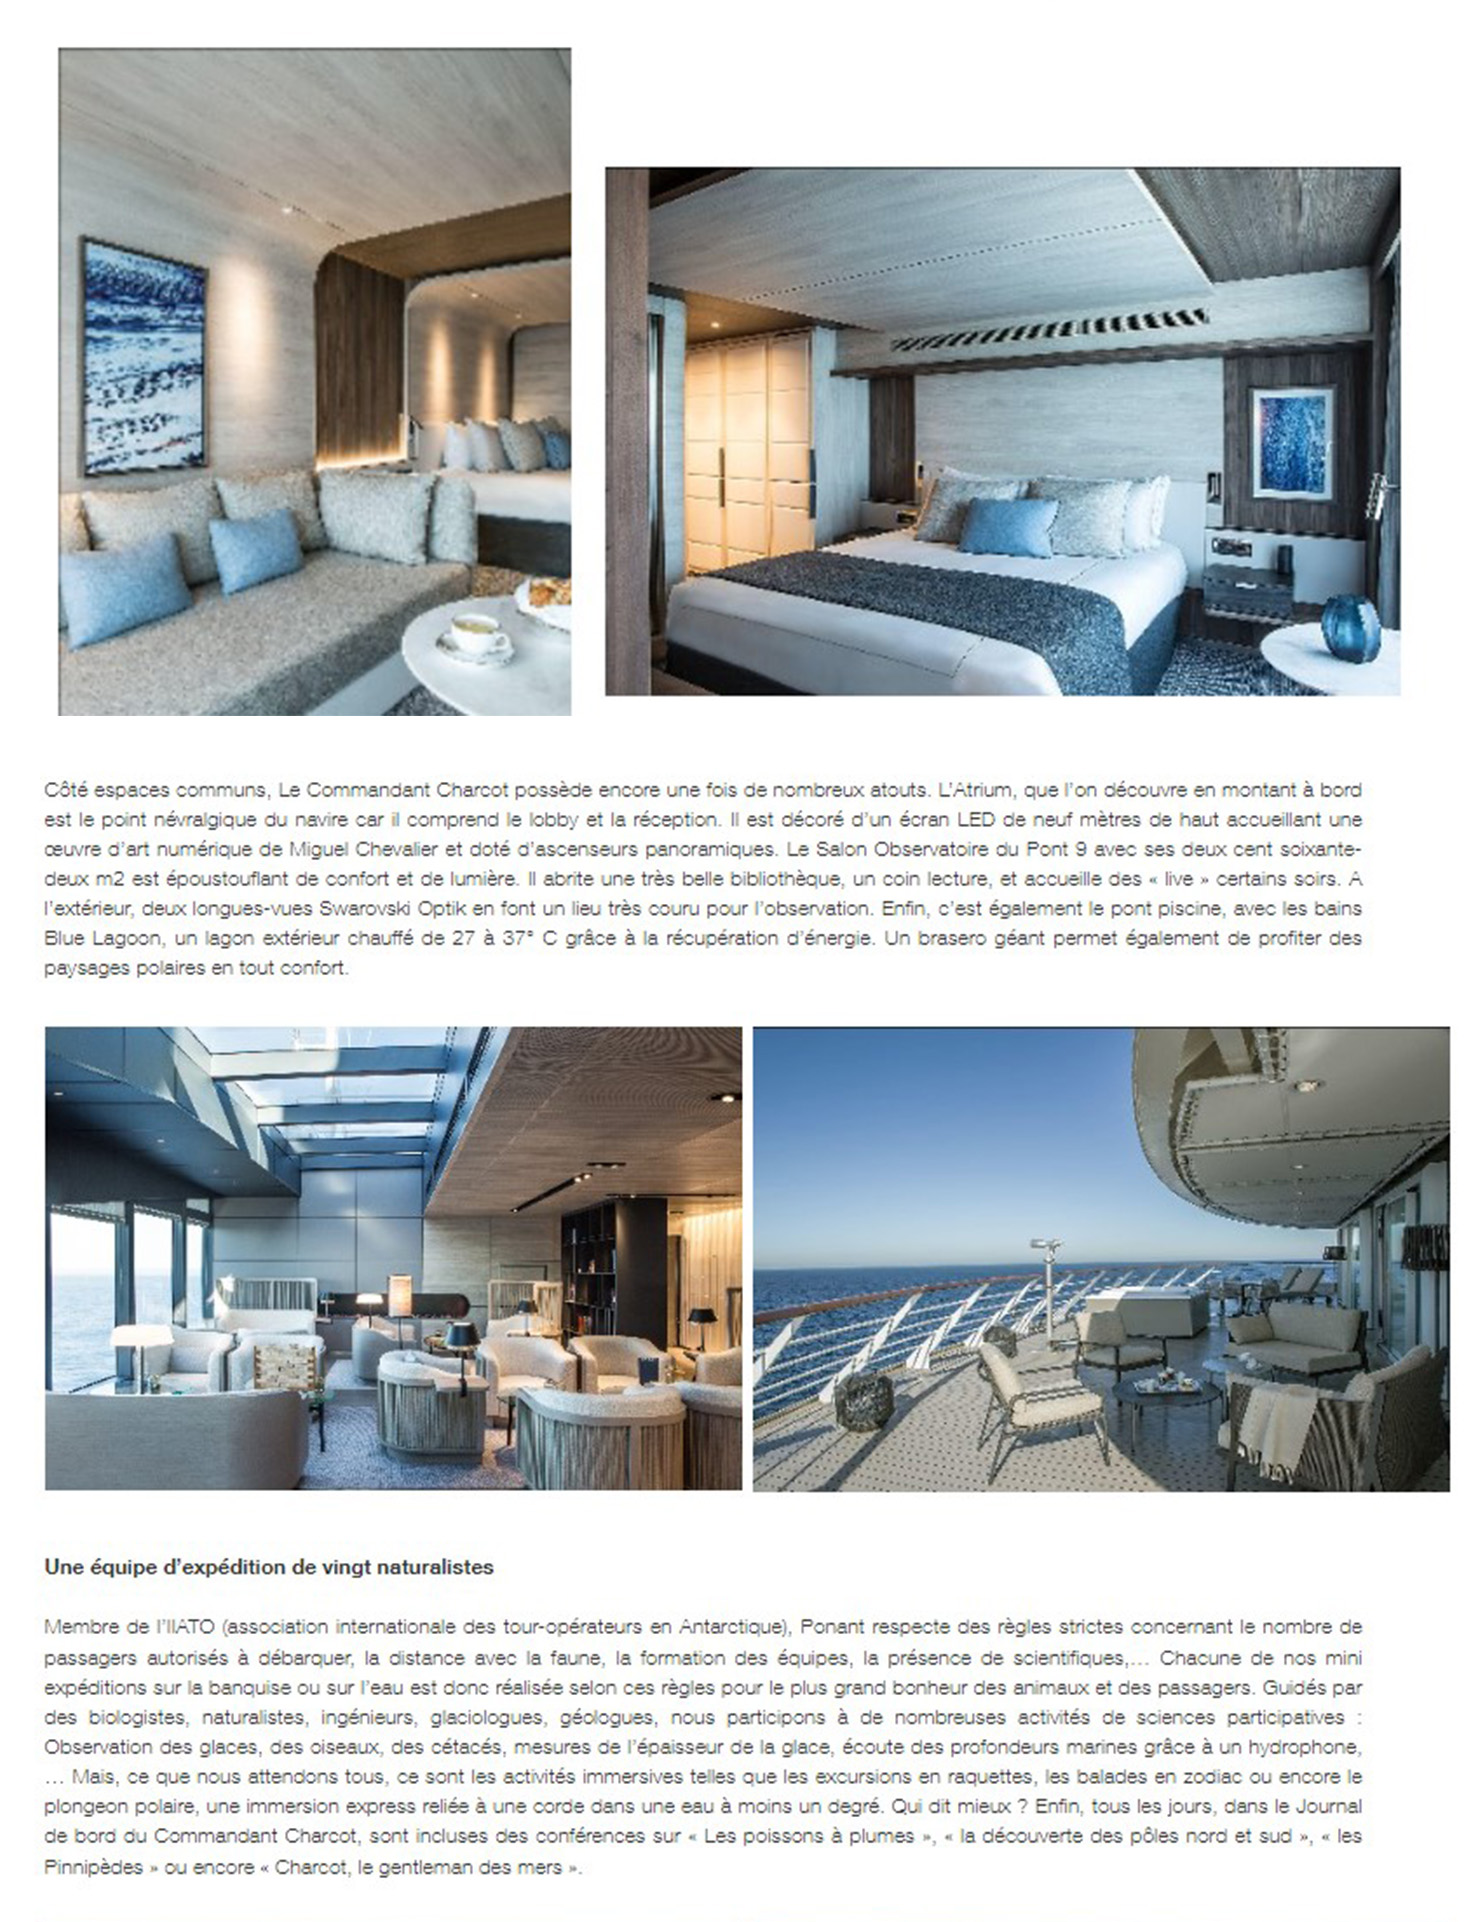 Article du webmagazine Attitude luxe sur le Commandant Charcot page 4, les chambres du bateau invitent l'ambiance polaire à bord